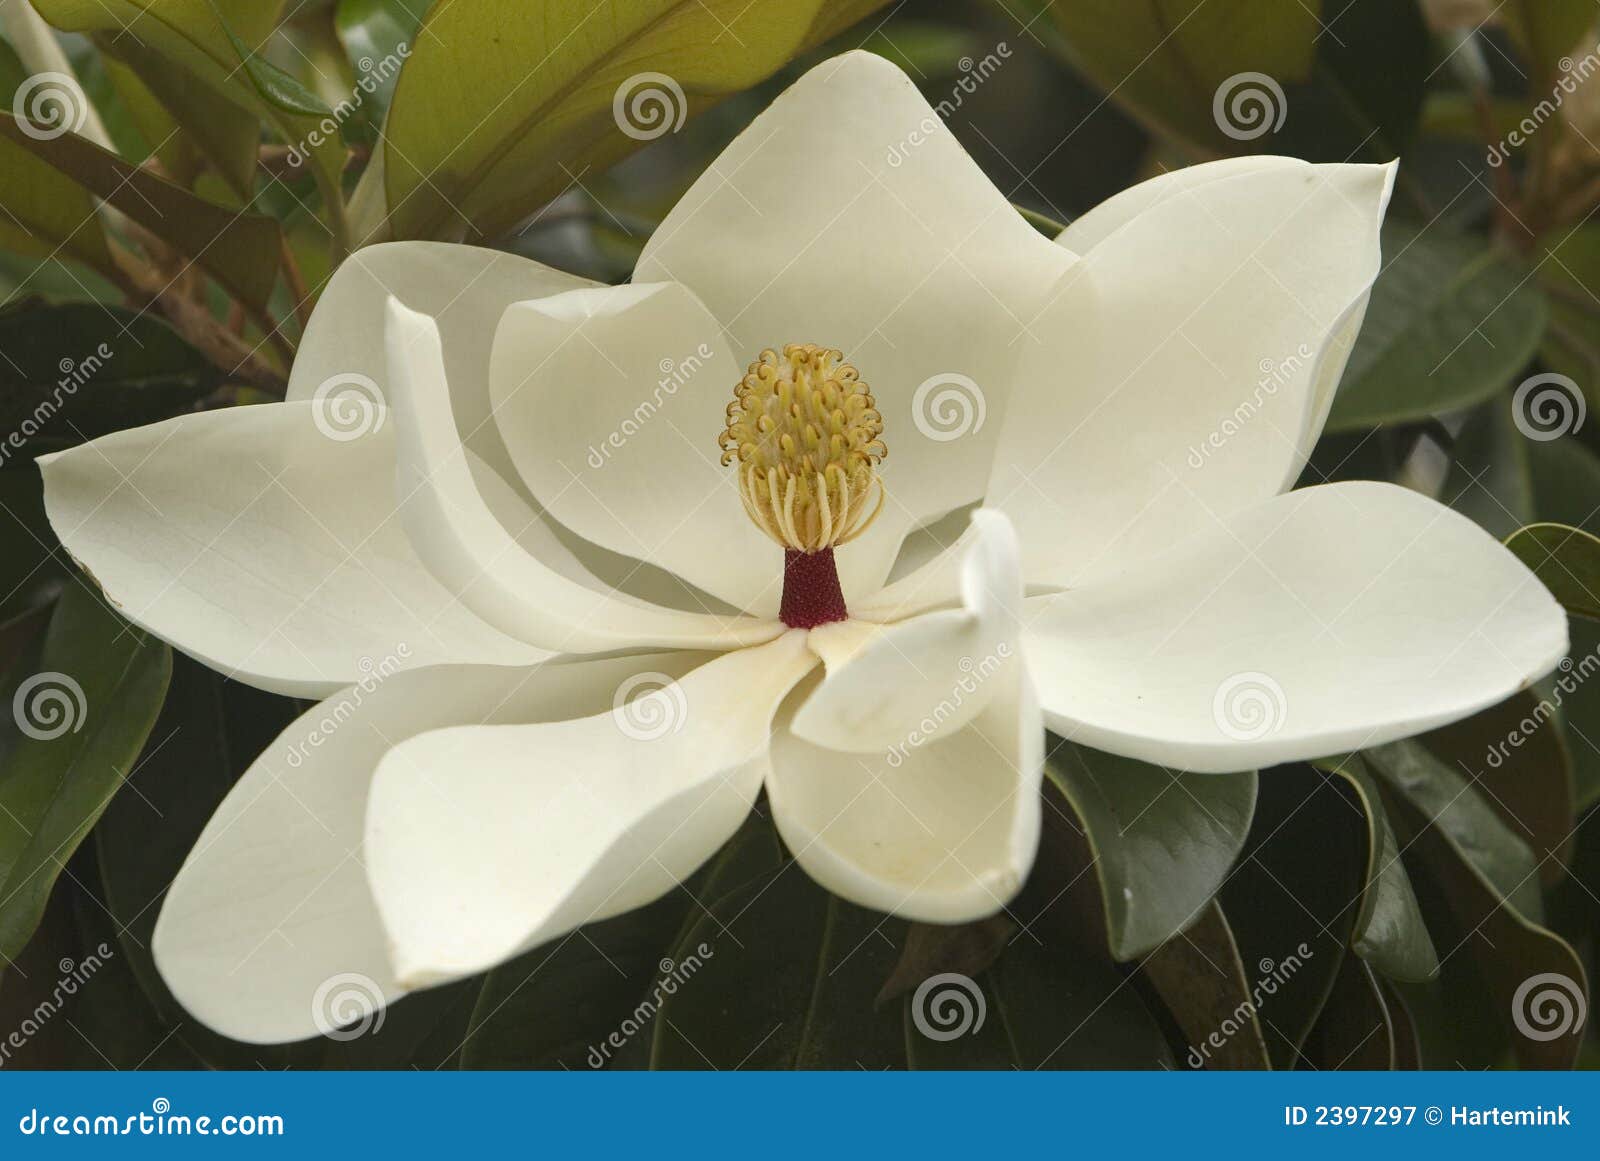 white magnolia blossom